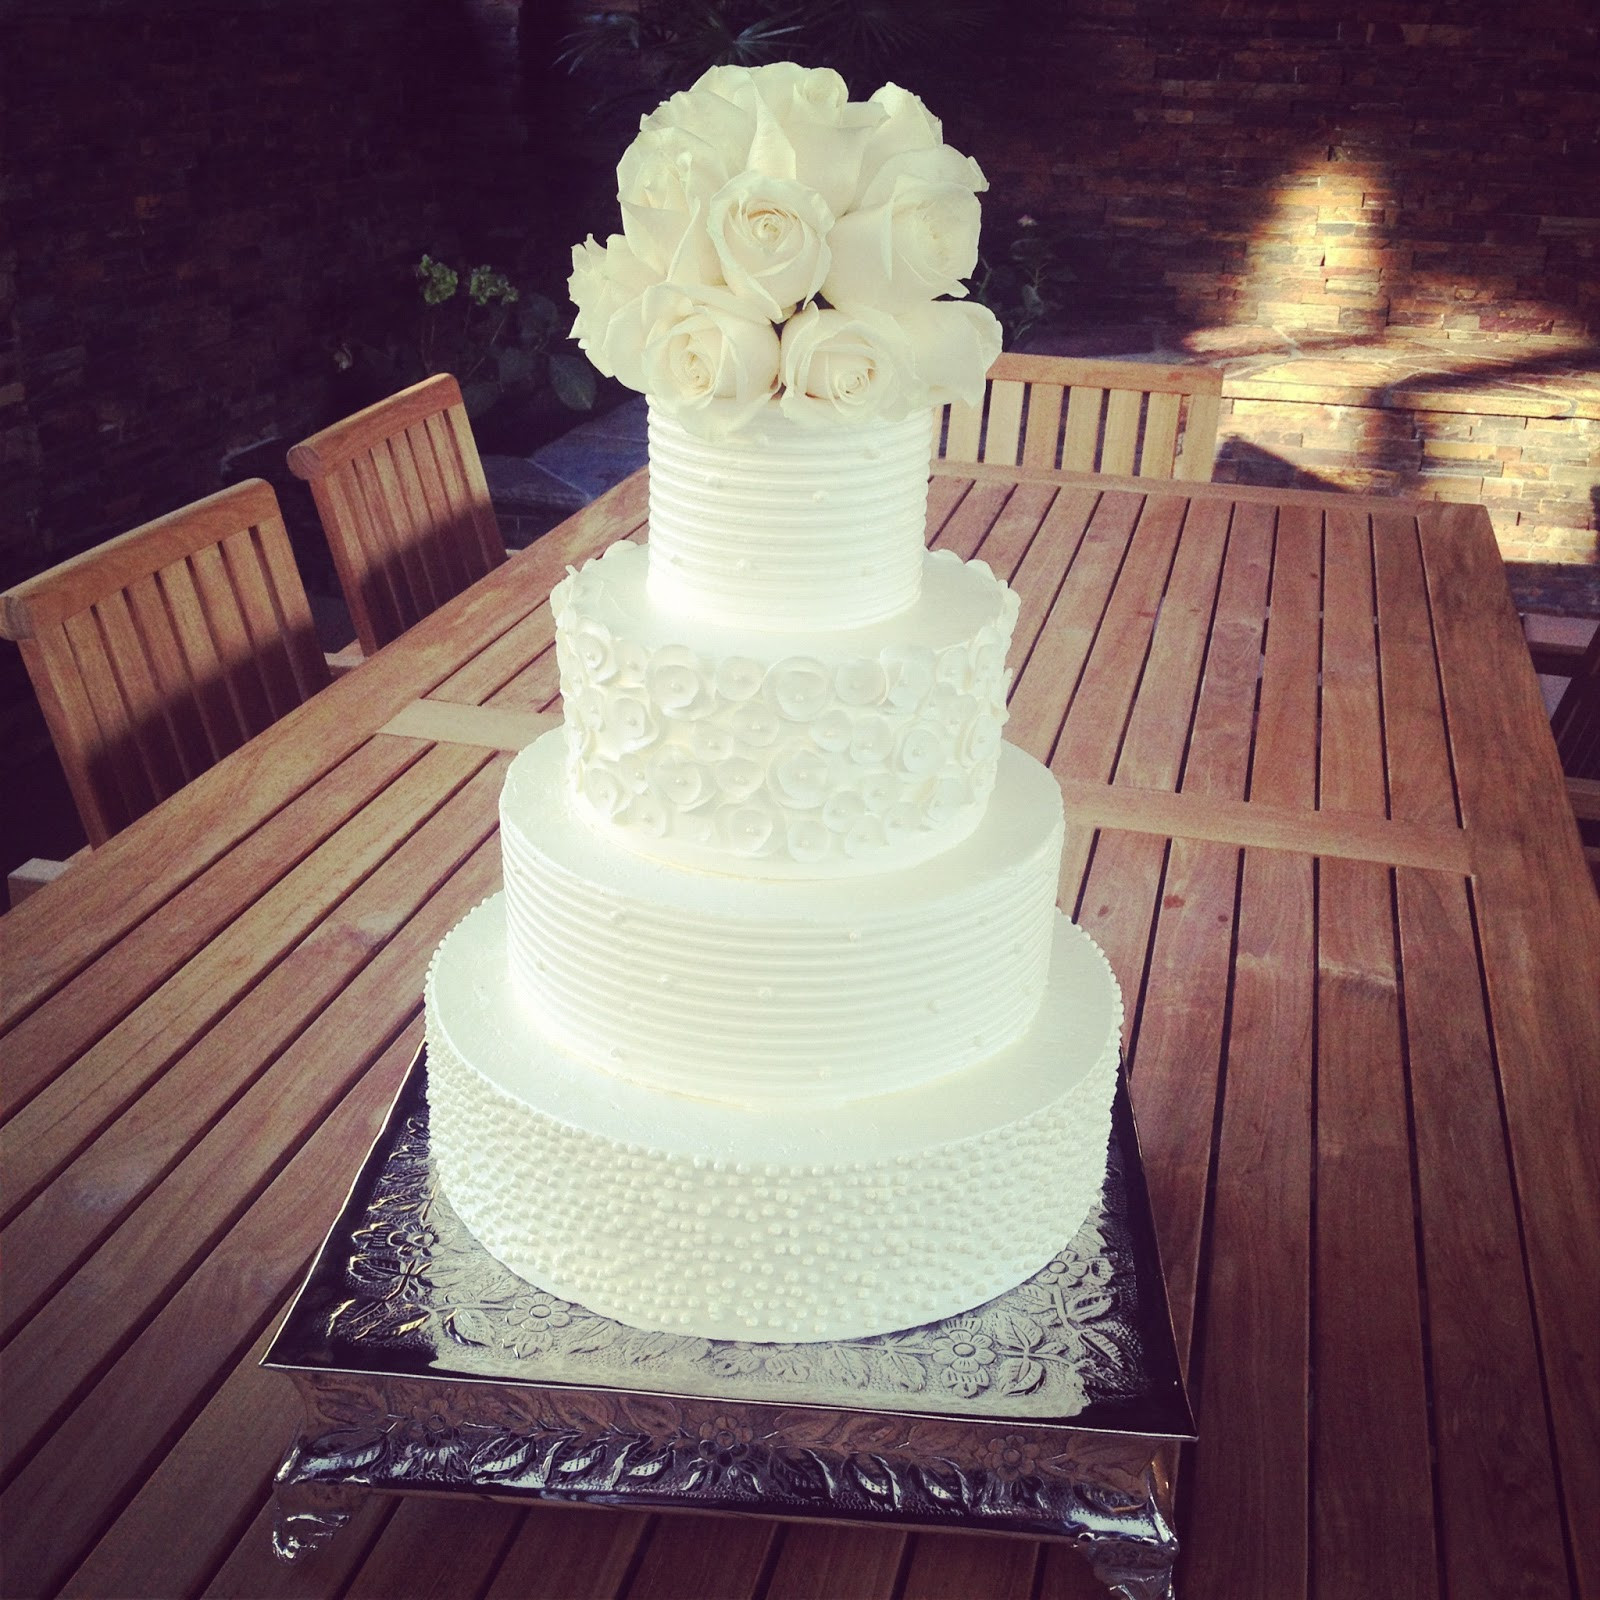 White Buttercream Wedding Cake
 BAKESHOPmarie white buttercream wedding cake with white roses